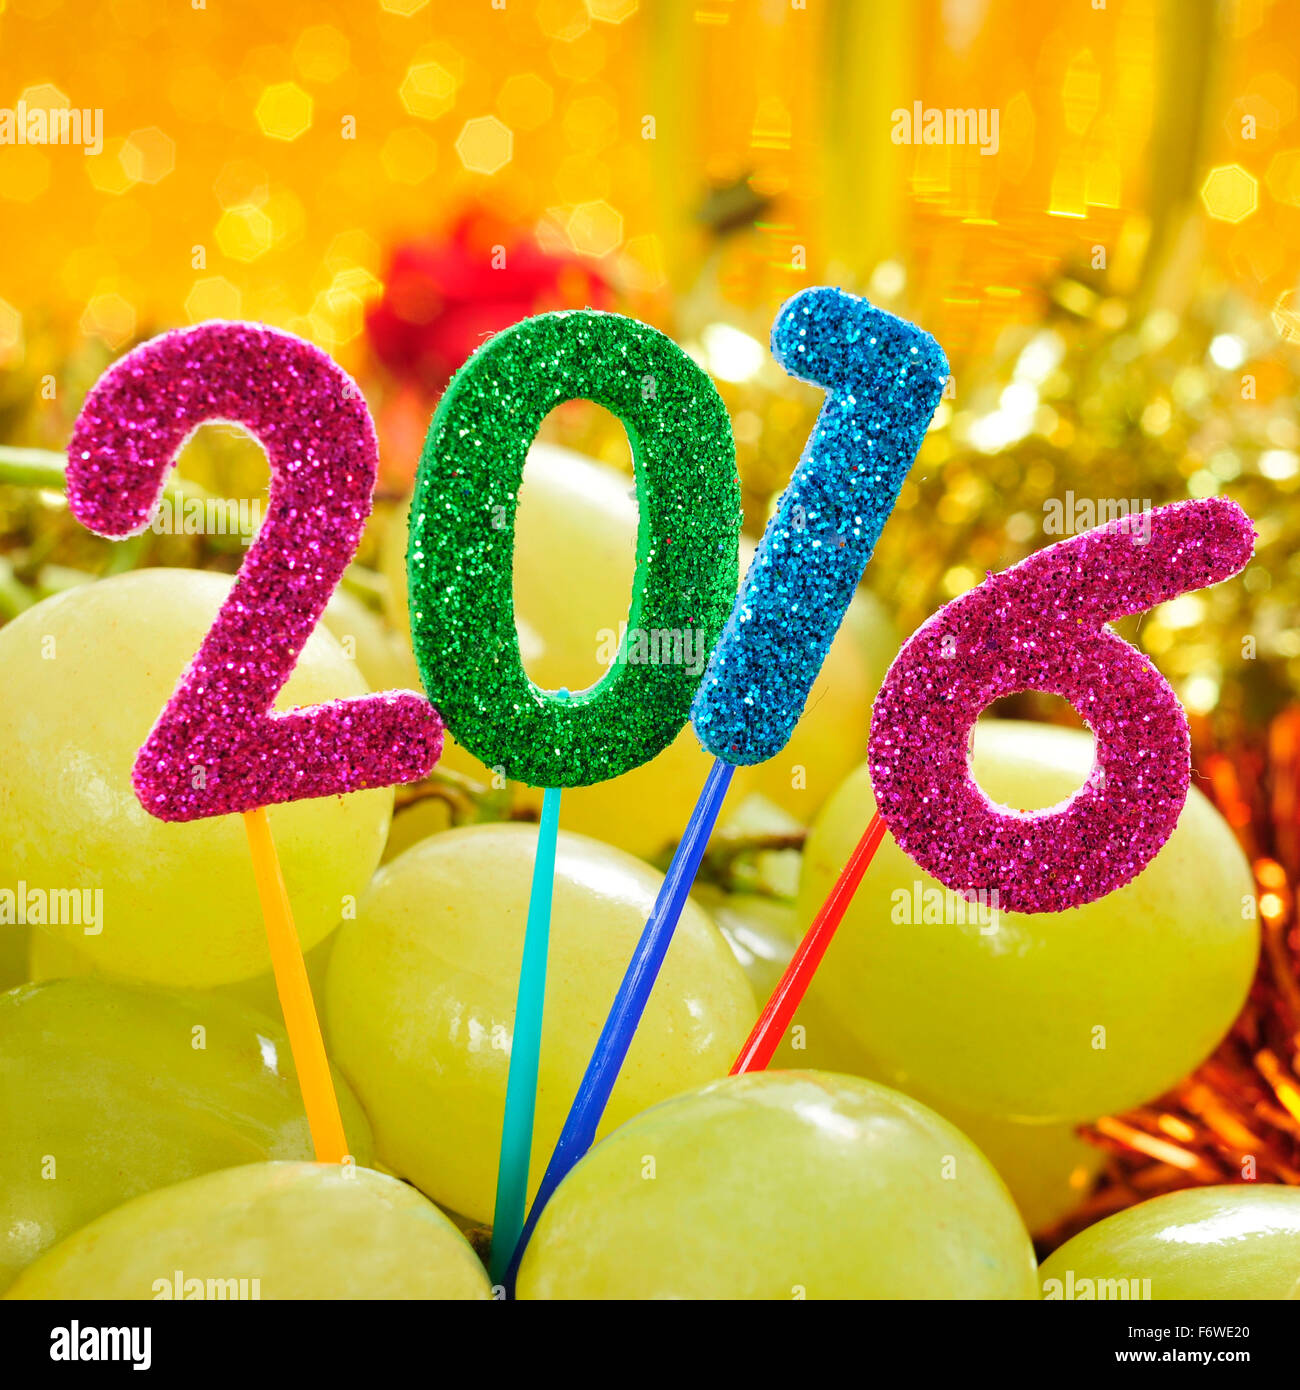 glitzernde Zahlen in verschiedenen Farben bilden die Anzahl 2016, wie das neue Jahr mit einem Haufen von Trauben in einem festlich gedeckten Tisch Stockfoto